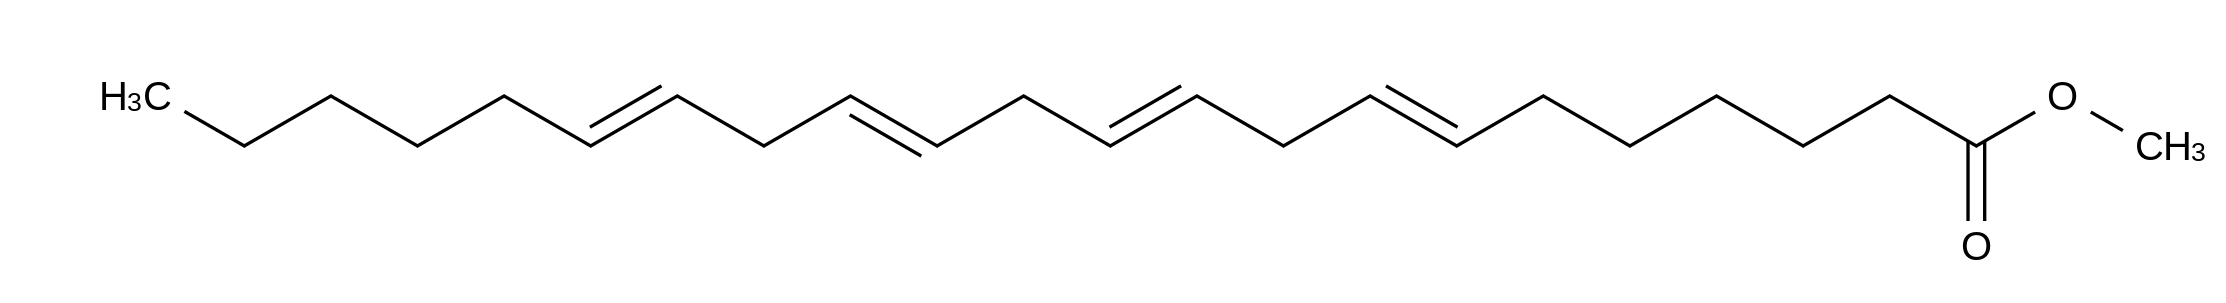 cis-7,10,13,16-Docosatetraenoic Acid Methyl Ester